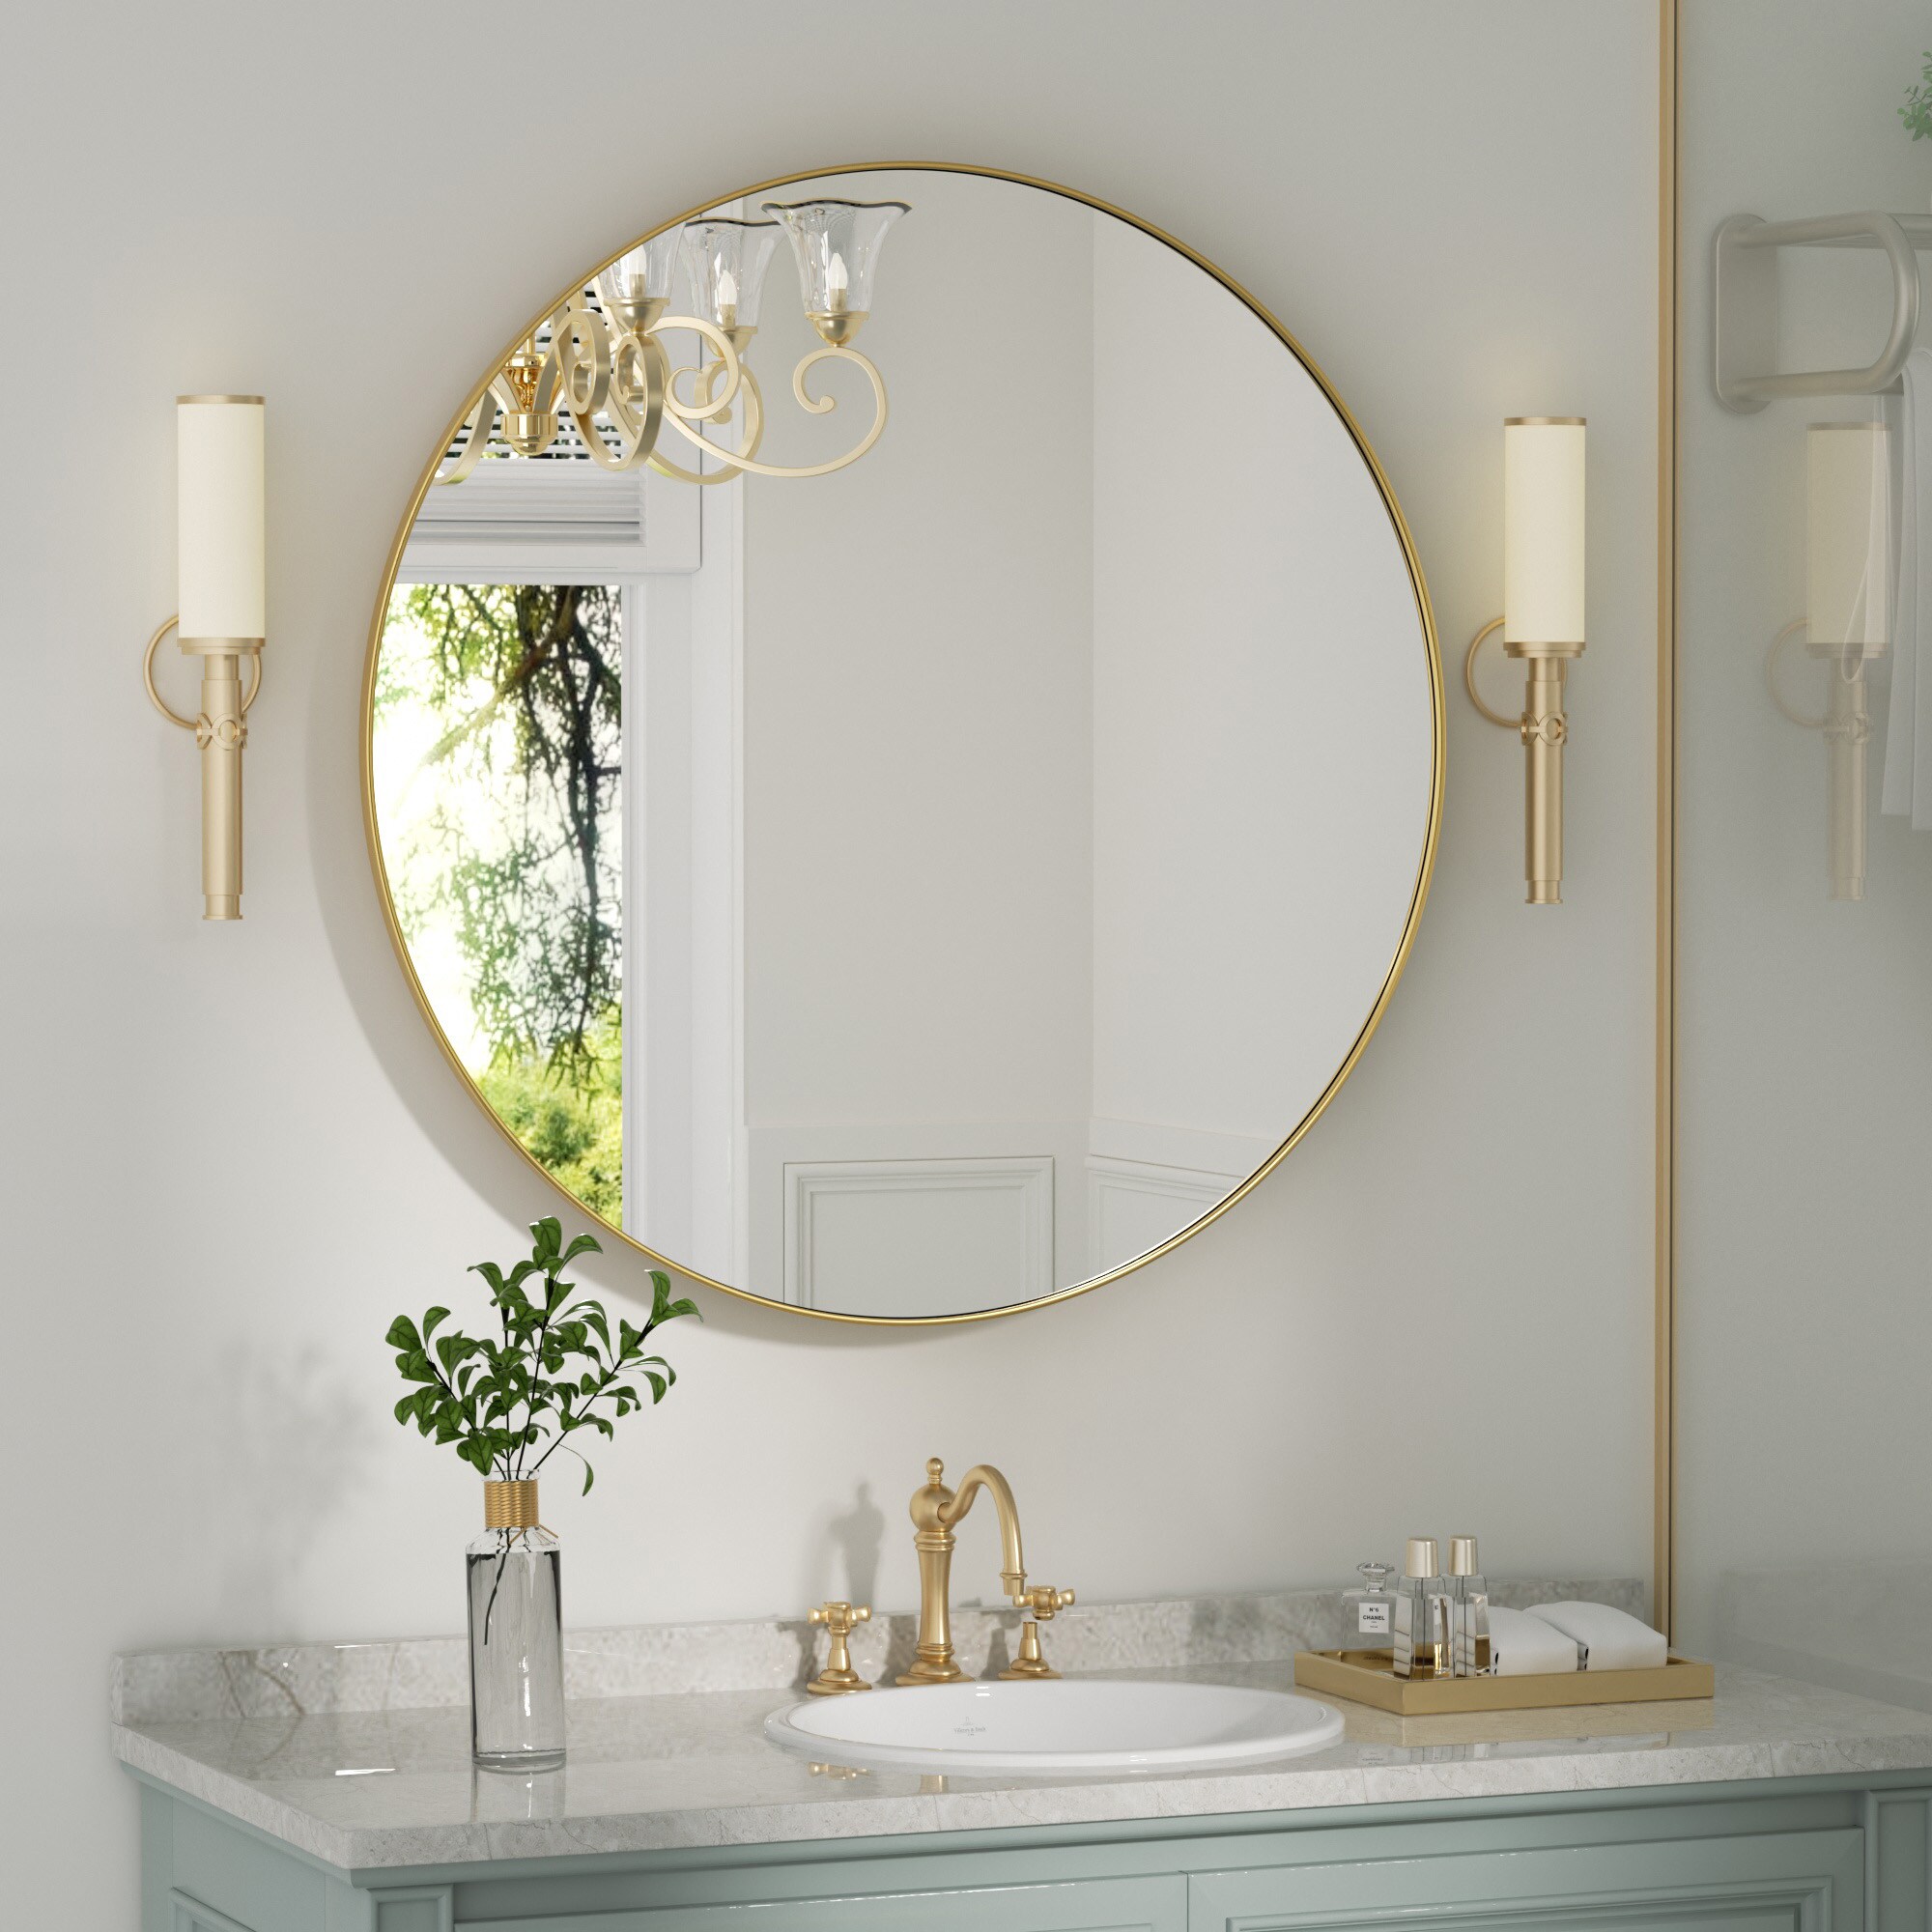 Beautypeak 18 inch Round Mirror, Black Metal Frame Circle Mirror, Wall Mirror for Entryway, Bathroom, Vanity, Living Room, Black